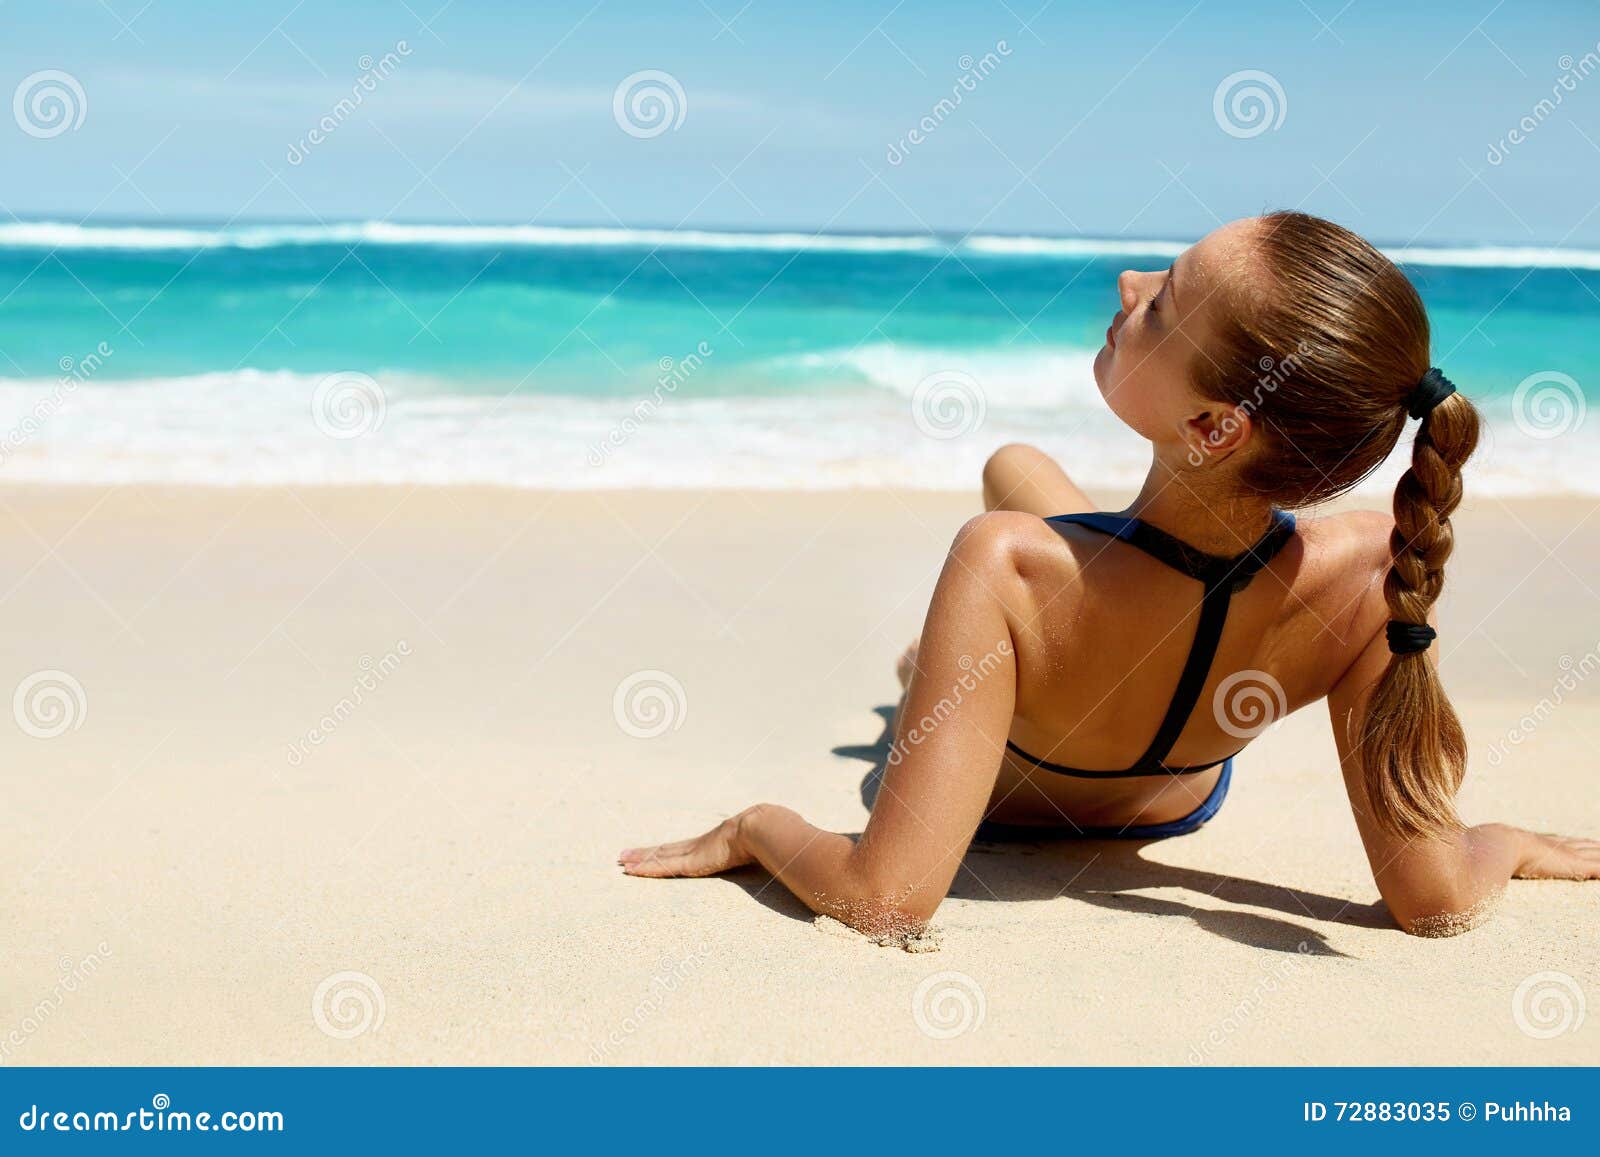 Argentina Nude Beaches